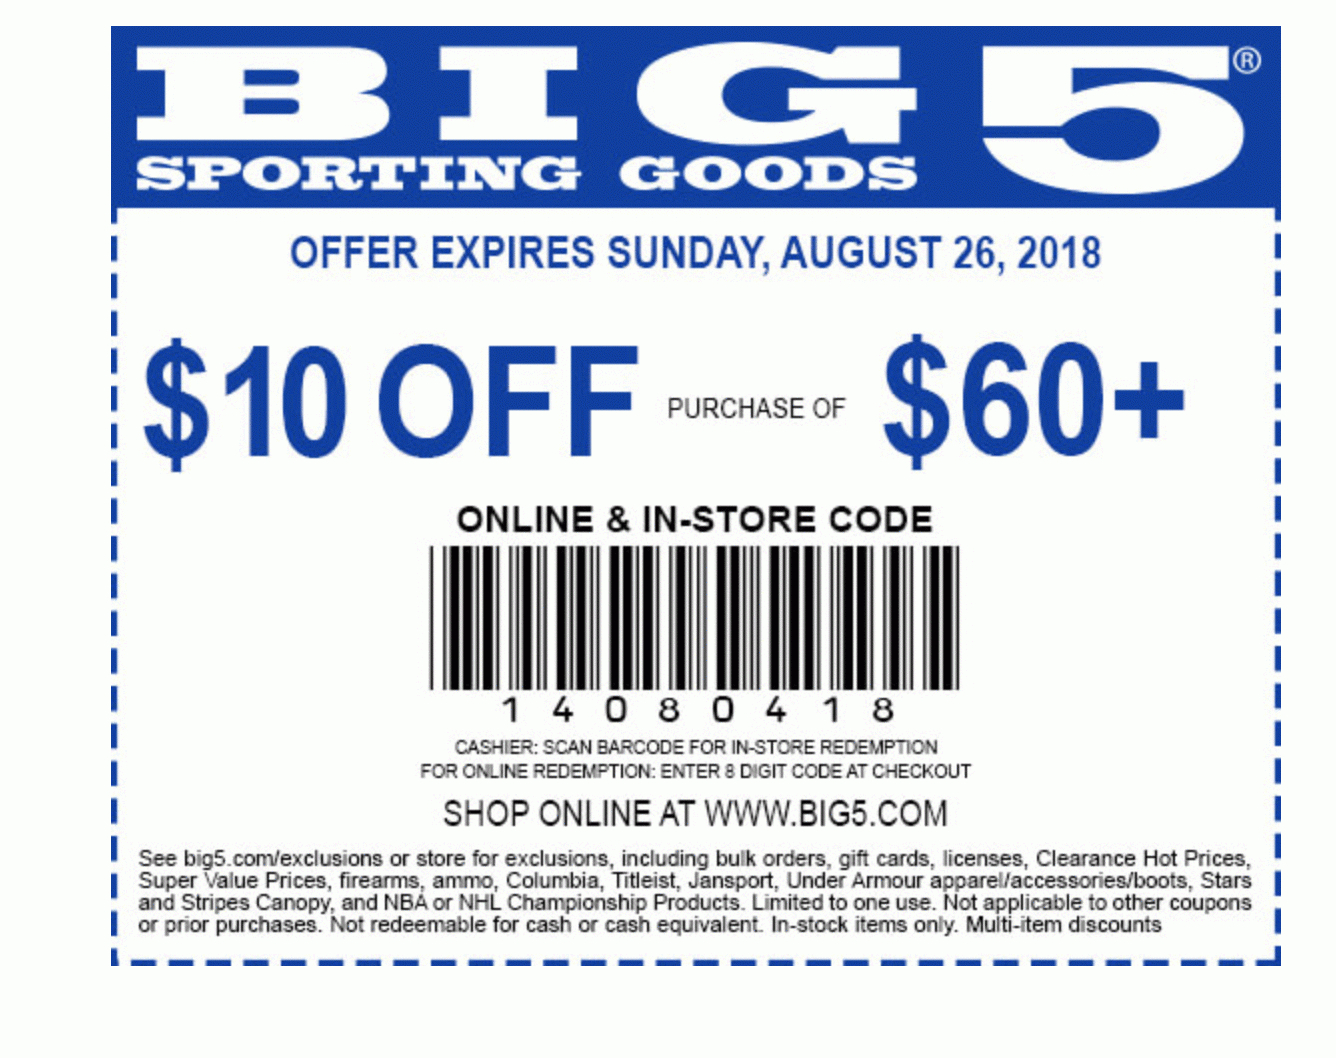 Big 5 Sporting Goods Coupon: $10 Off $60+ | Printable Coupons - Free Printable Bealls Florida Coupon